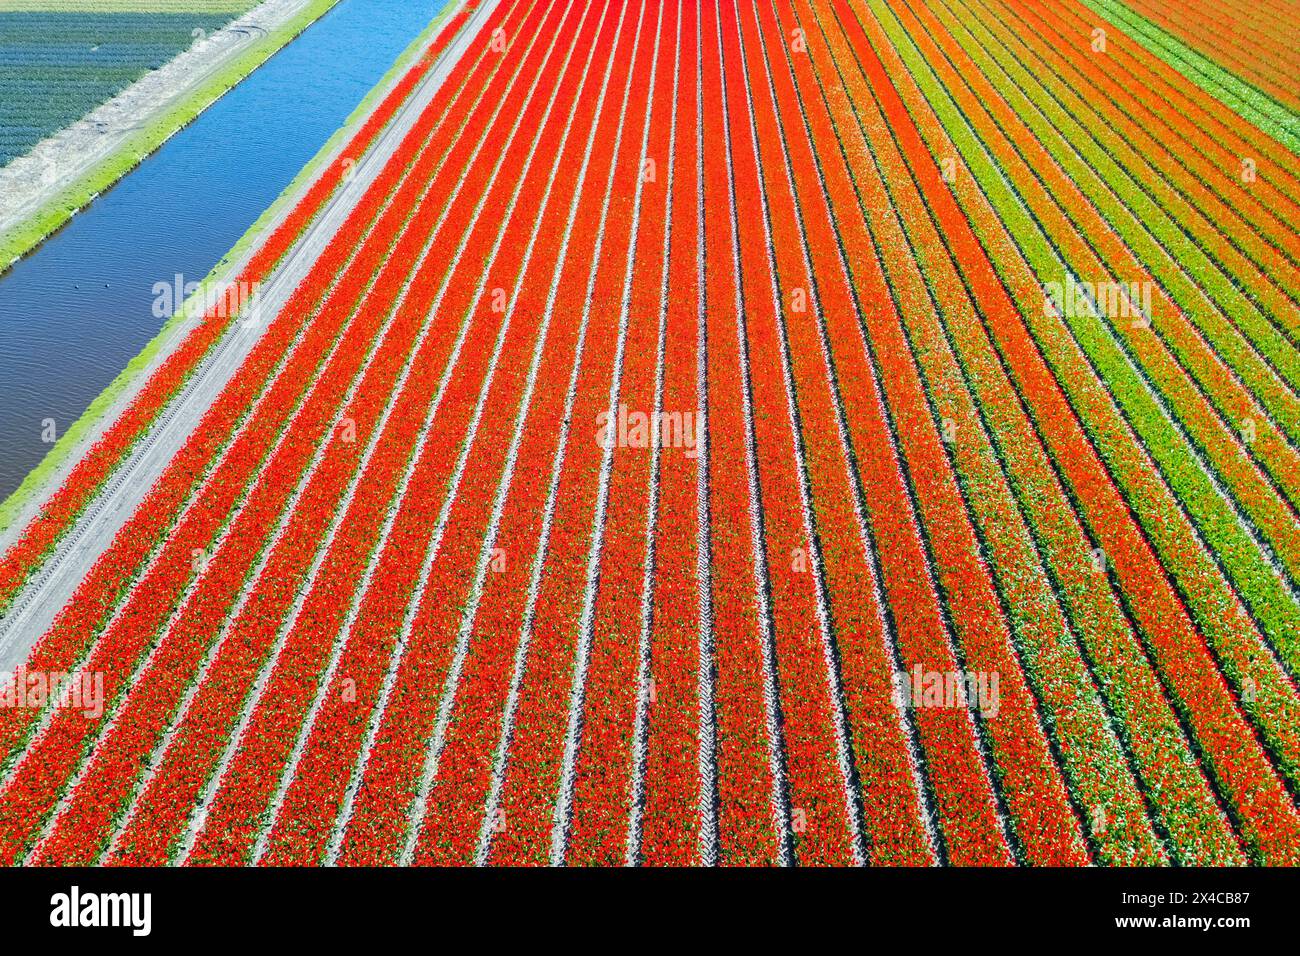 Vista aerea delle strisce di tulipani di vari colori in primavera. De Zilk, Noordwijk, distretto Zuid-Holland, Nederland. Foto Stock